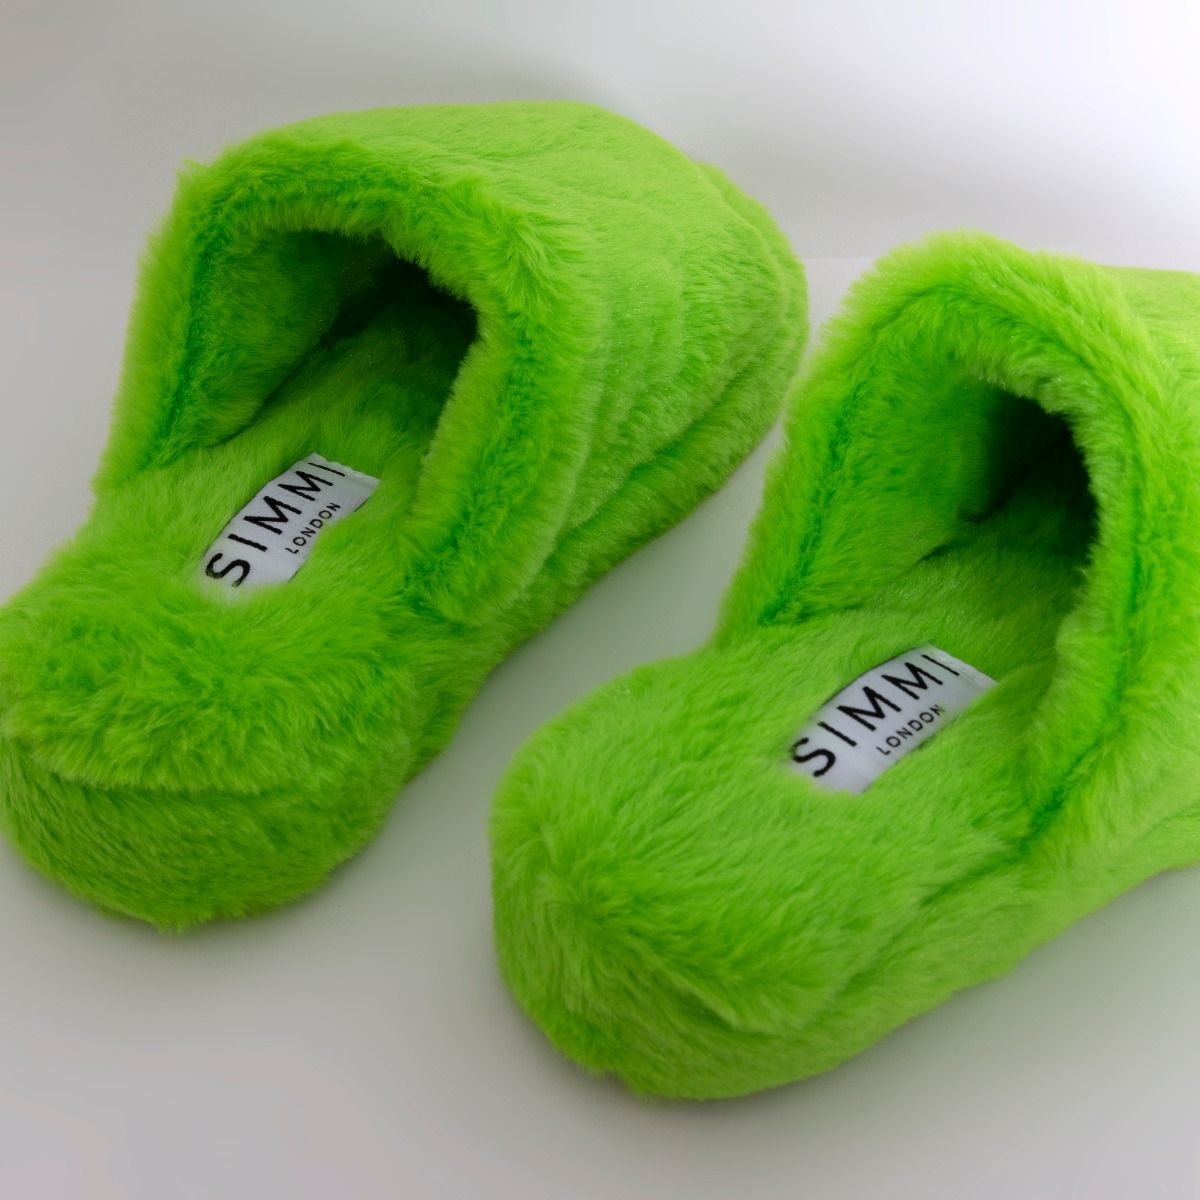 kohls slippers dearfoams